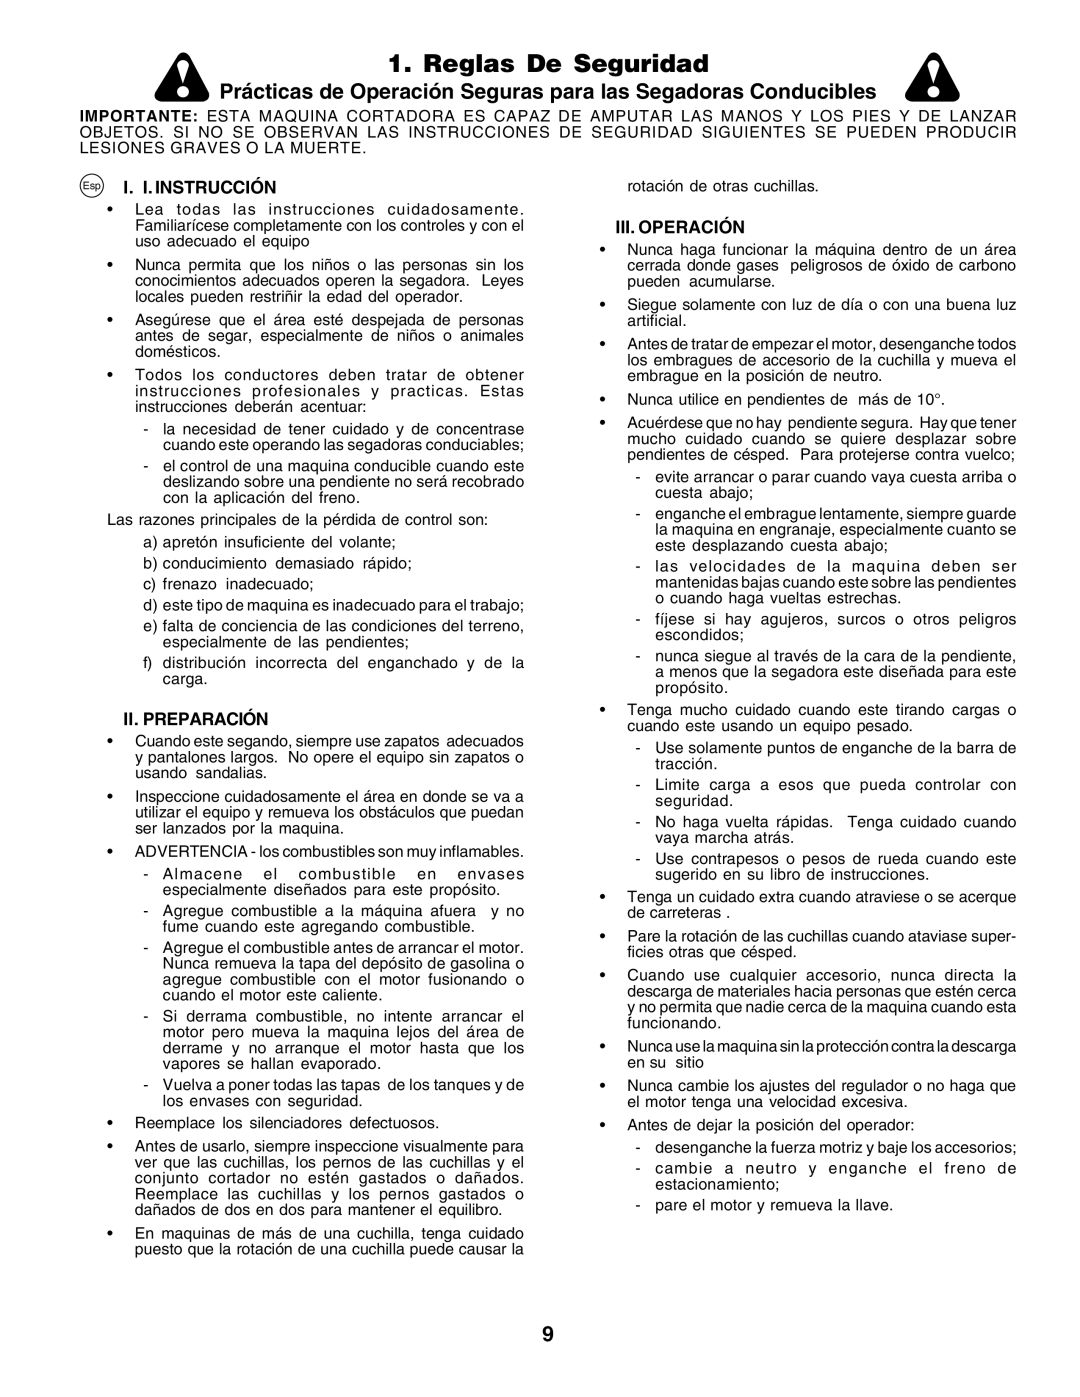 Husqvarna CT135 instruction manual Reglas De Seguridad, Esp I. I. INSTRUCCIÓN, Ii.Preparación, Iii.Operación 